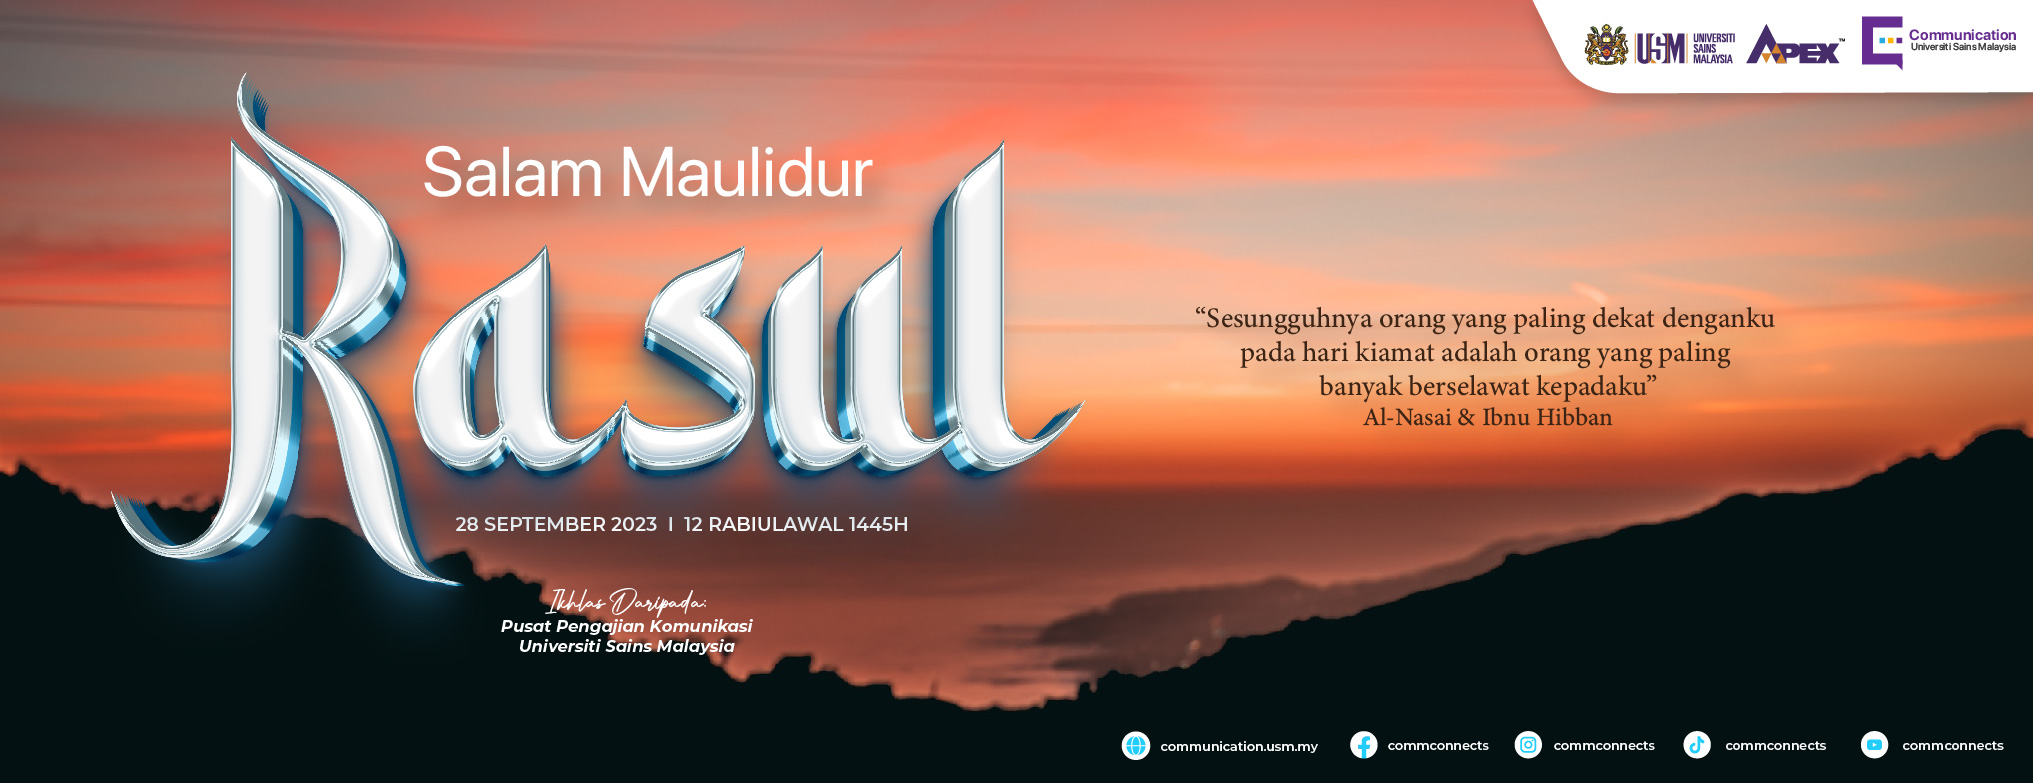 Salam Maulidur Rasul web banner